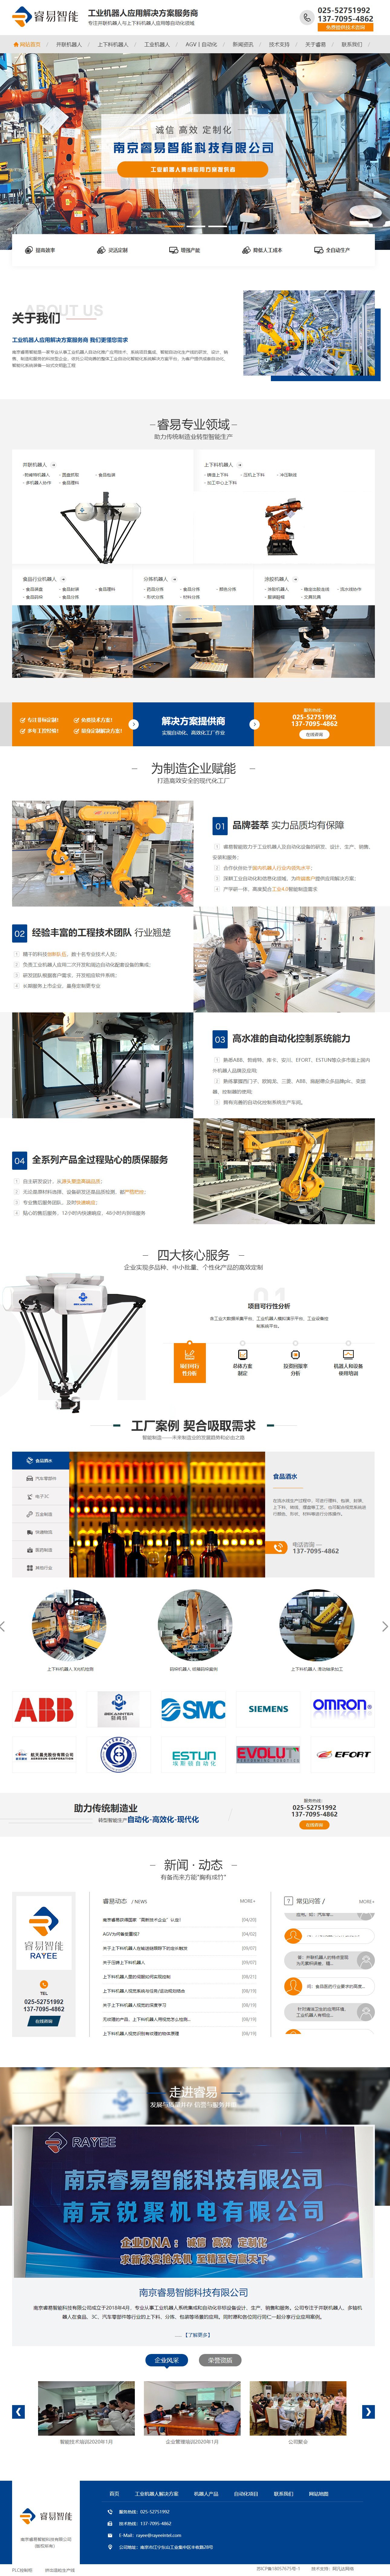 南京睿易工业机器人营销型网站 PC端预览图